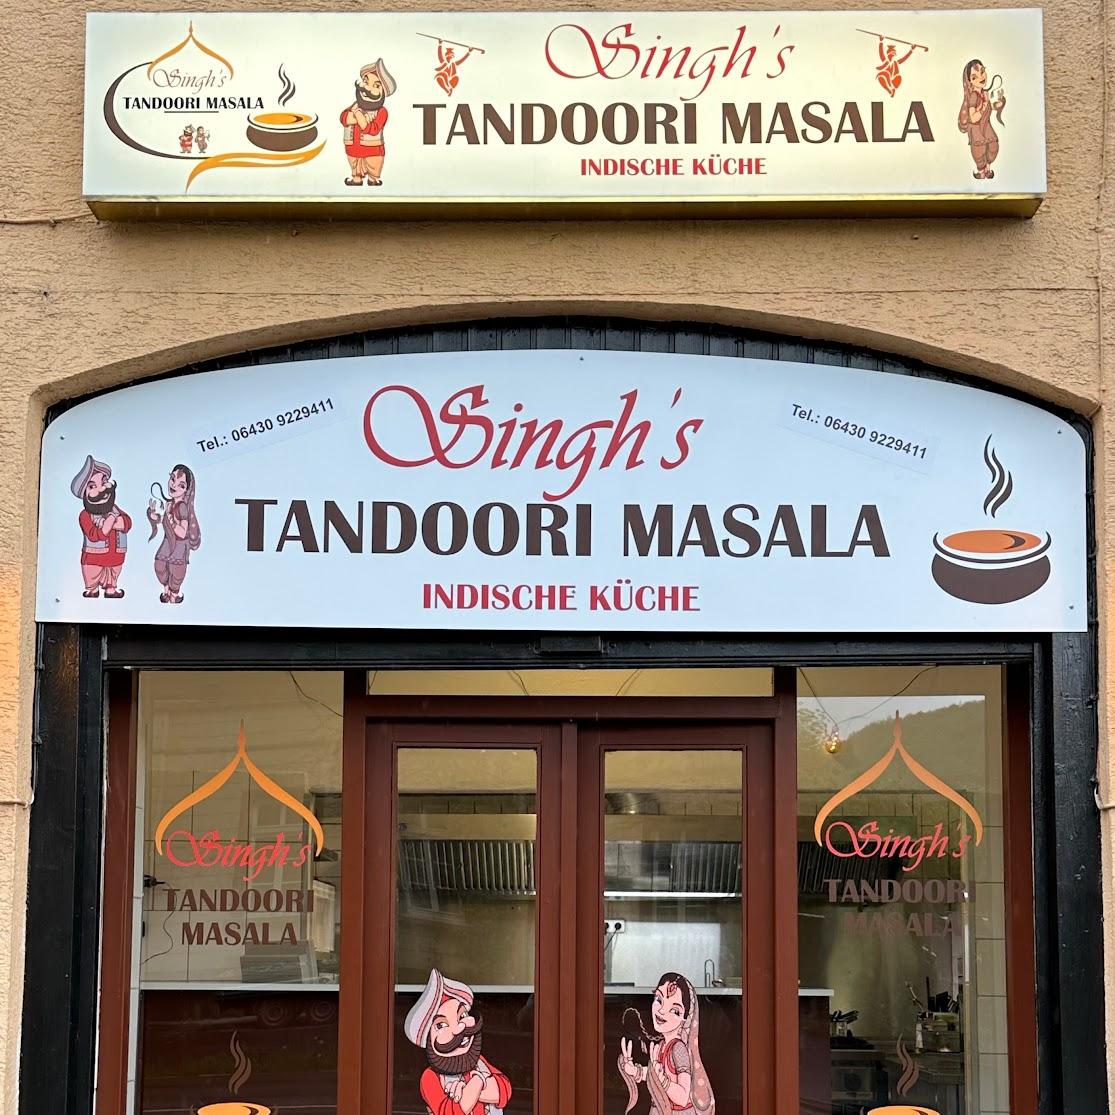 Restaurant "Singh’s Tandoori Masala" in Hahnstätten